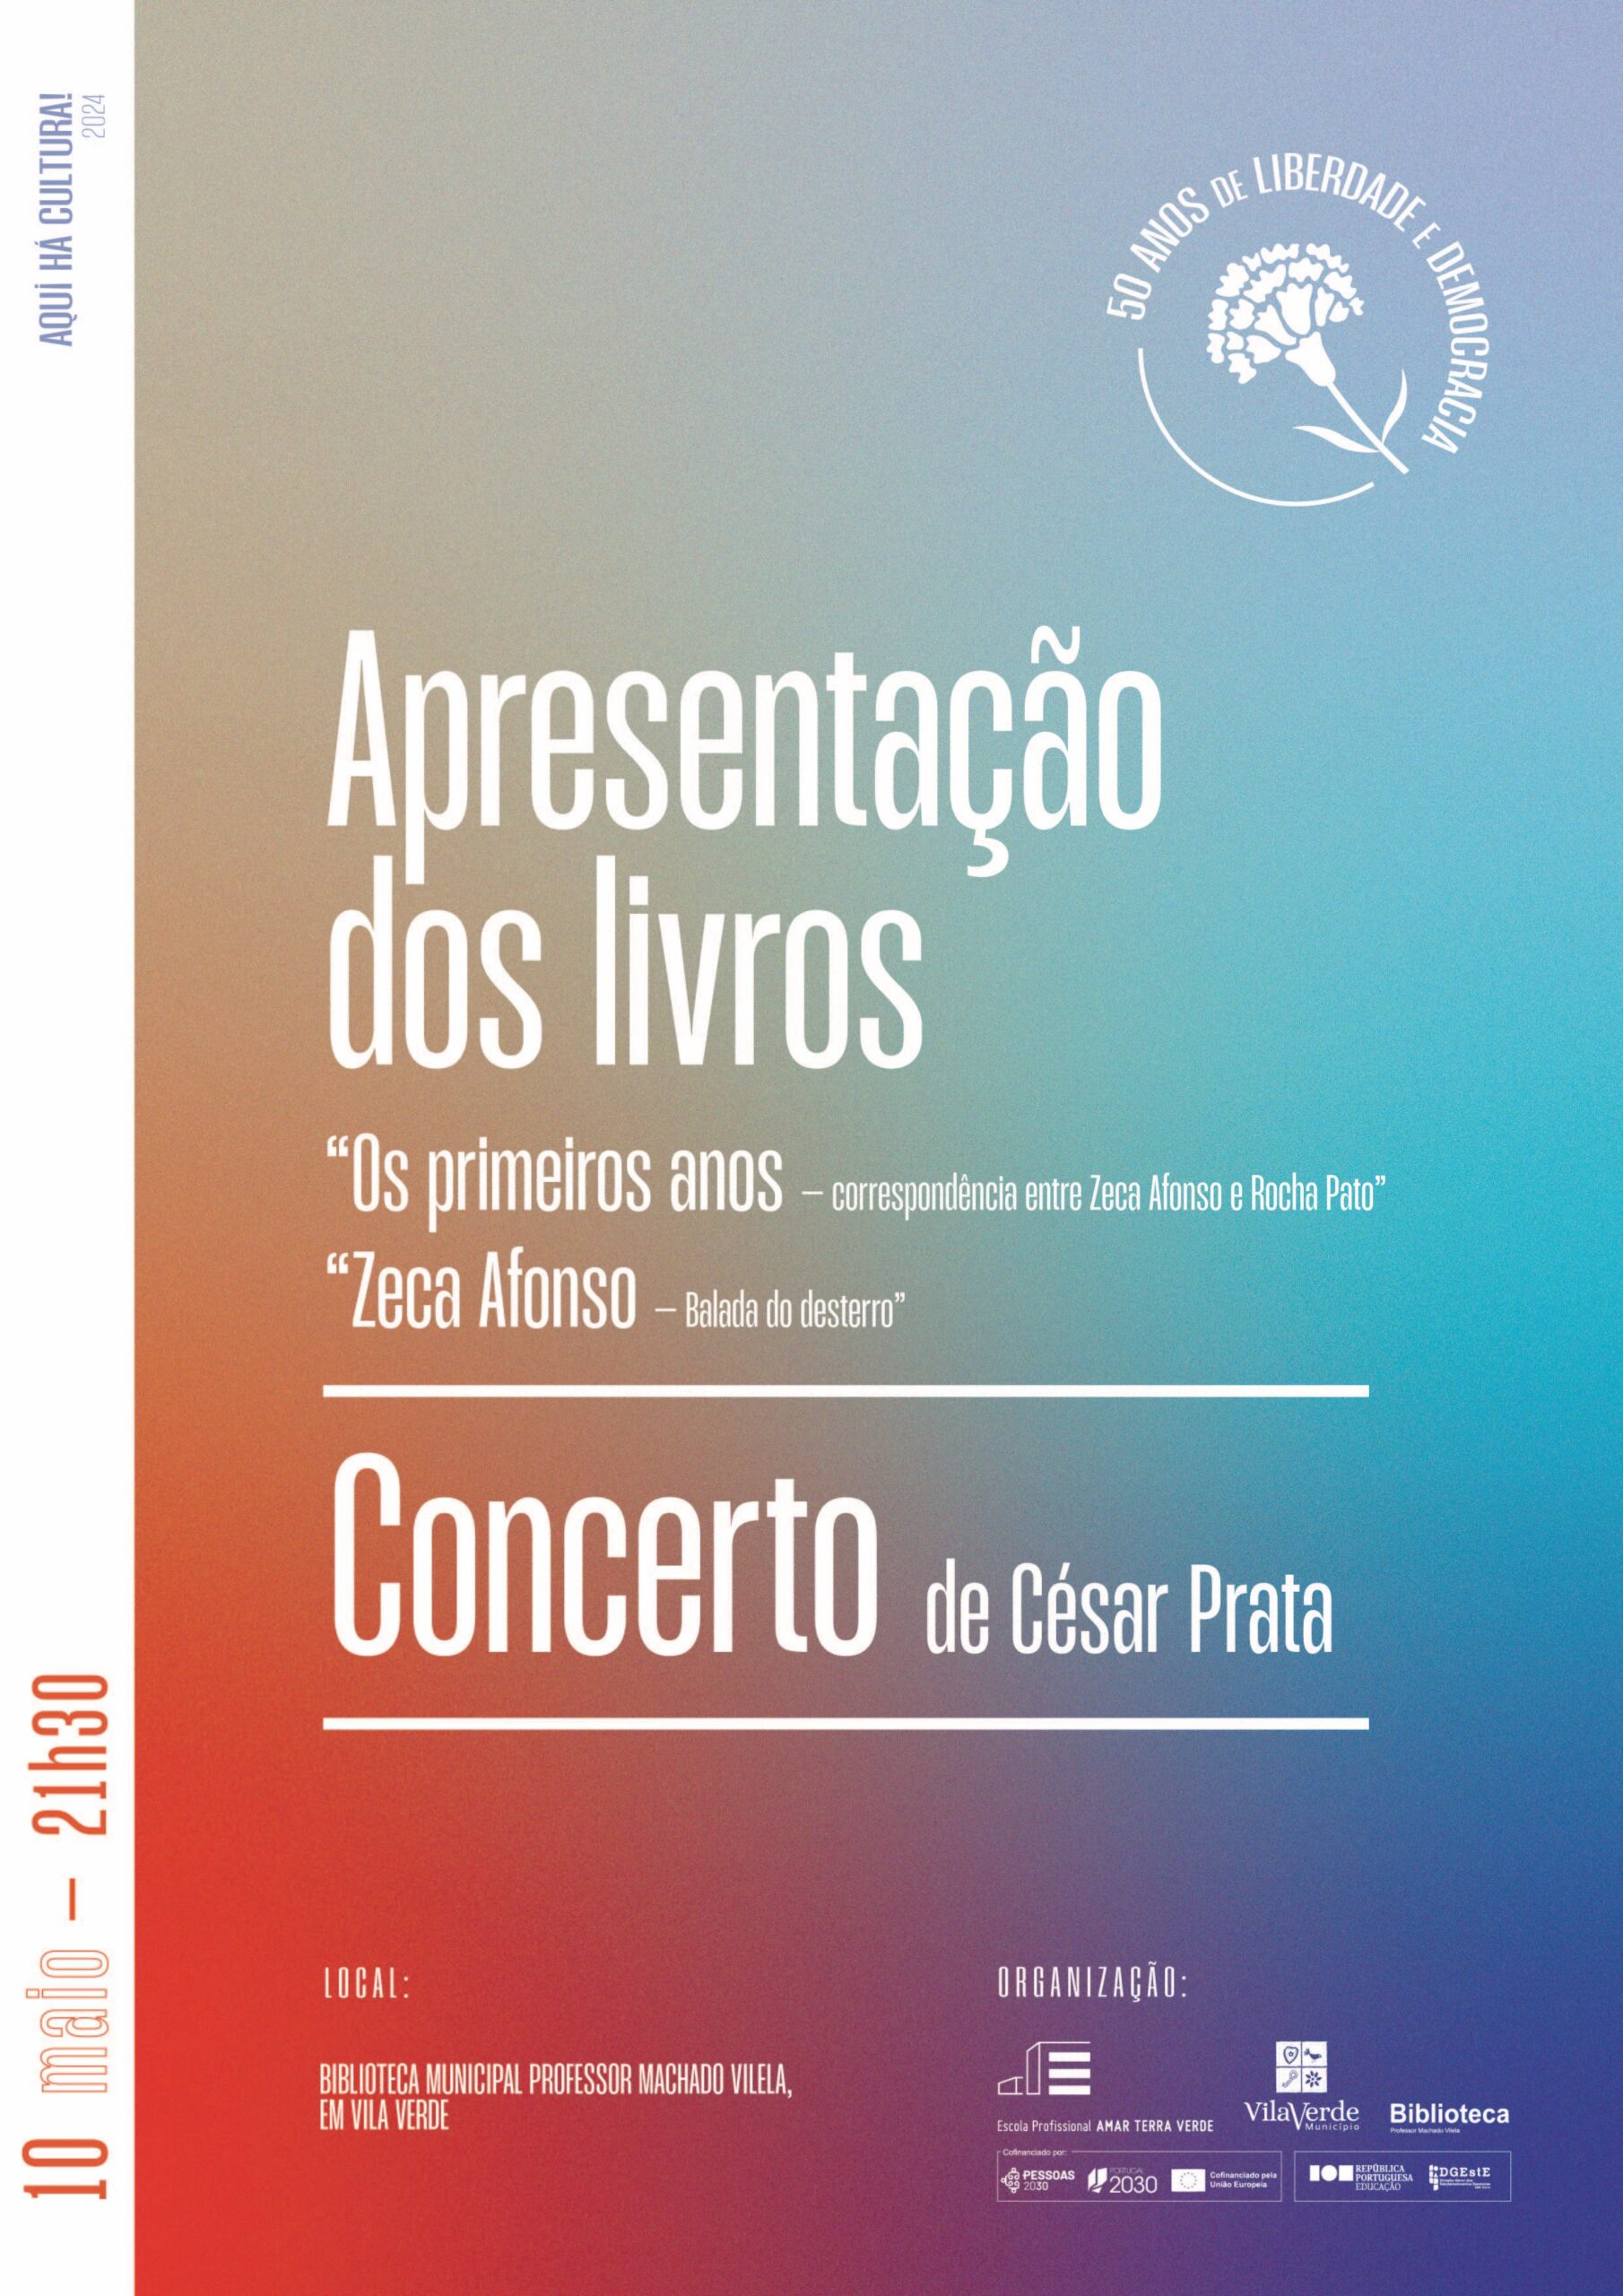 Capa Oficial do Evento Apresentação de obras sobre Zeca Afonso e concerto de César Prata